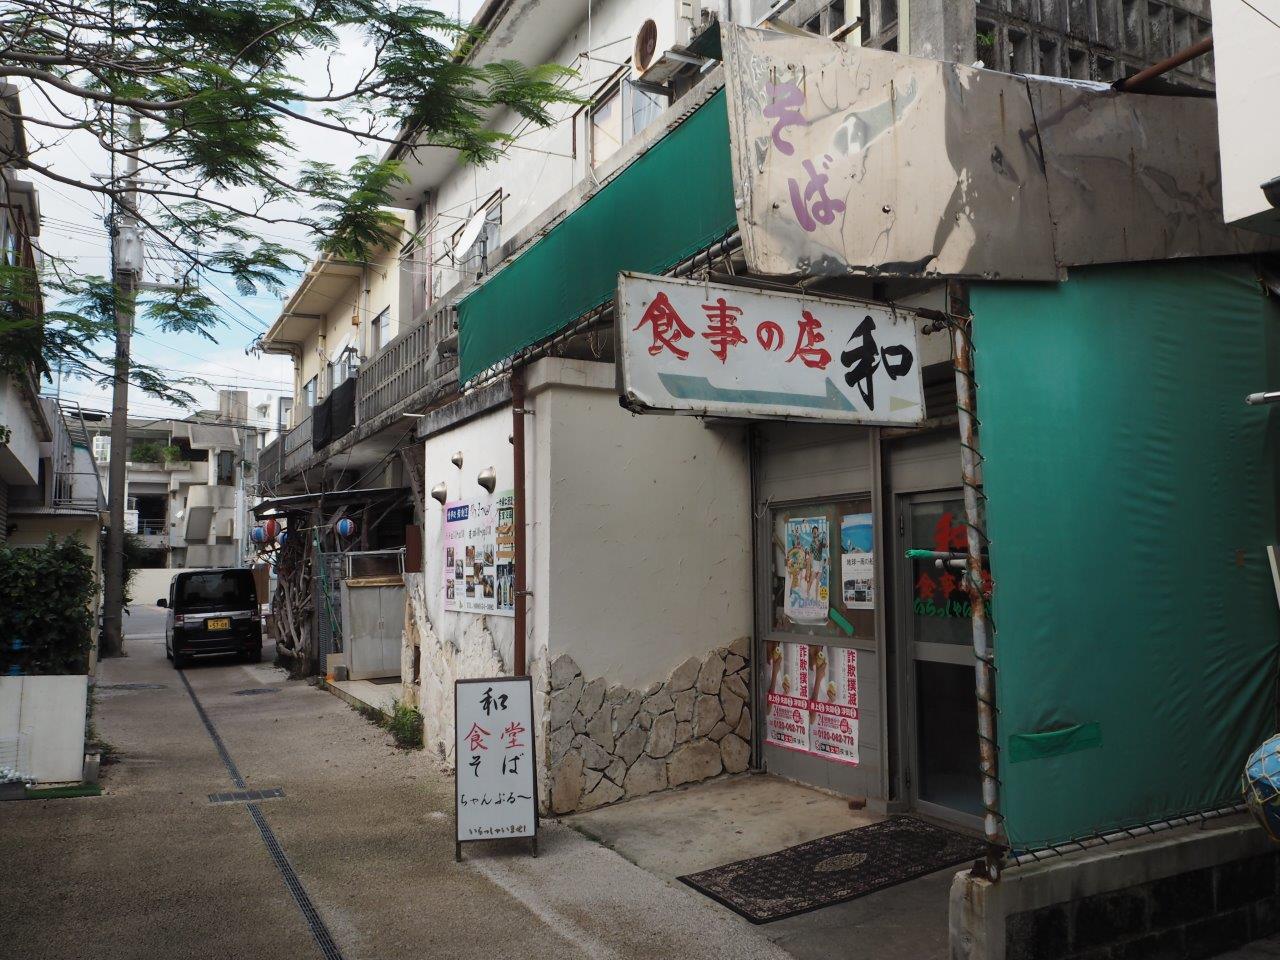 名護市城にある 食事の店和 飲食店 Nagos Okinawa Web Magazine